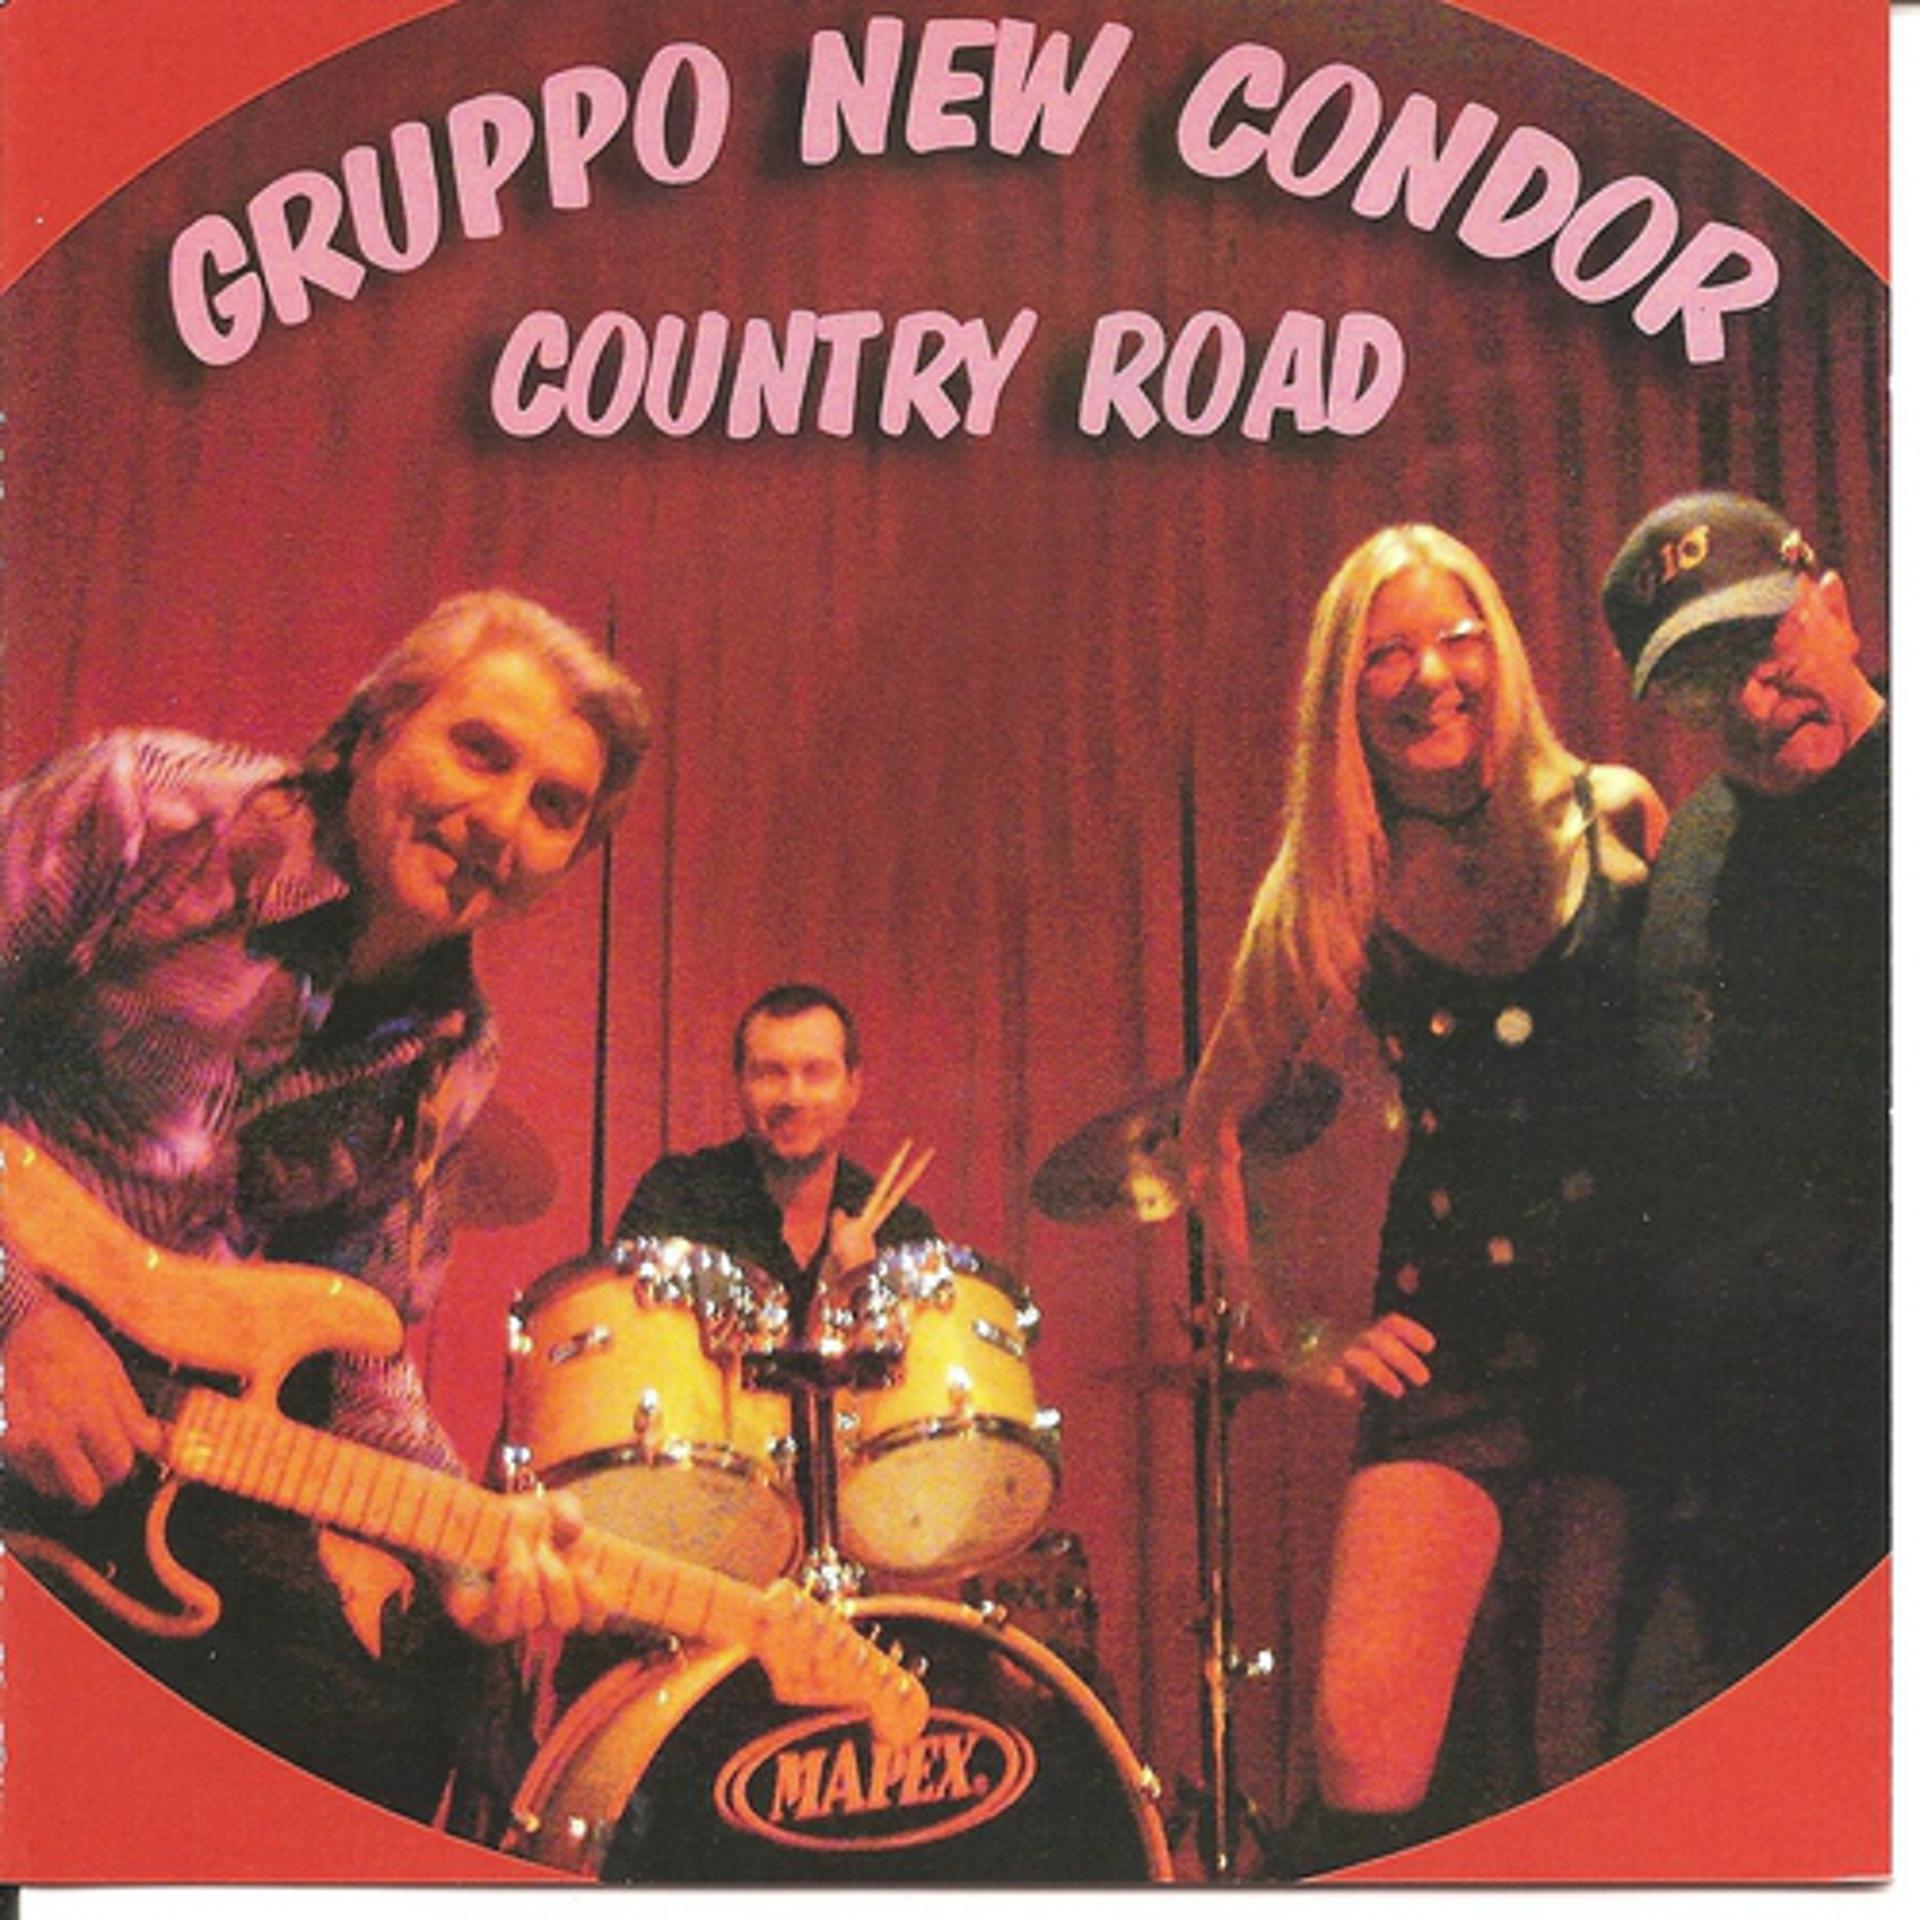 Постер к треку Cicci Guitar Condor, Gruppo New Condor - Attenti al lupo / Canzone